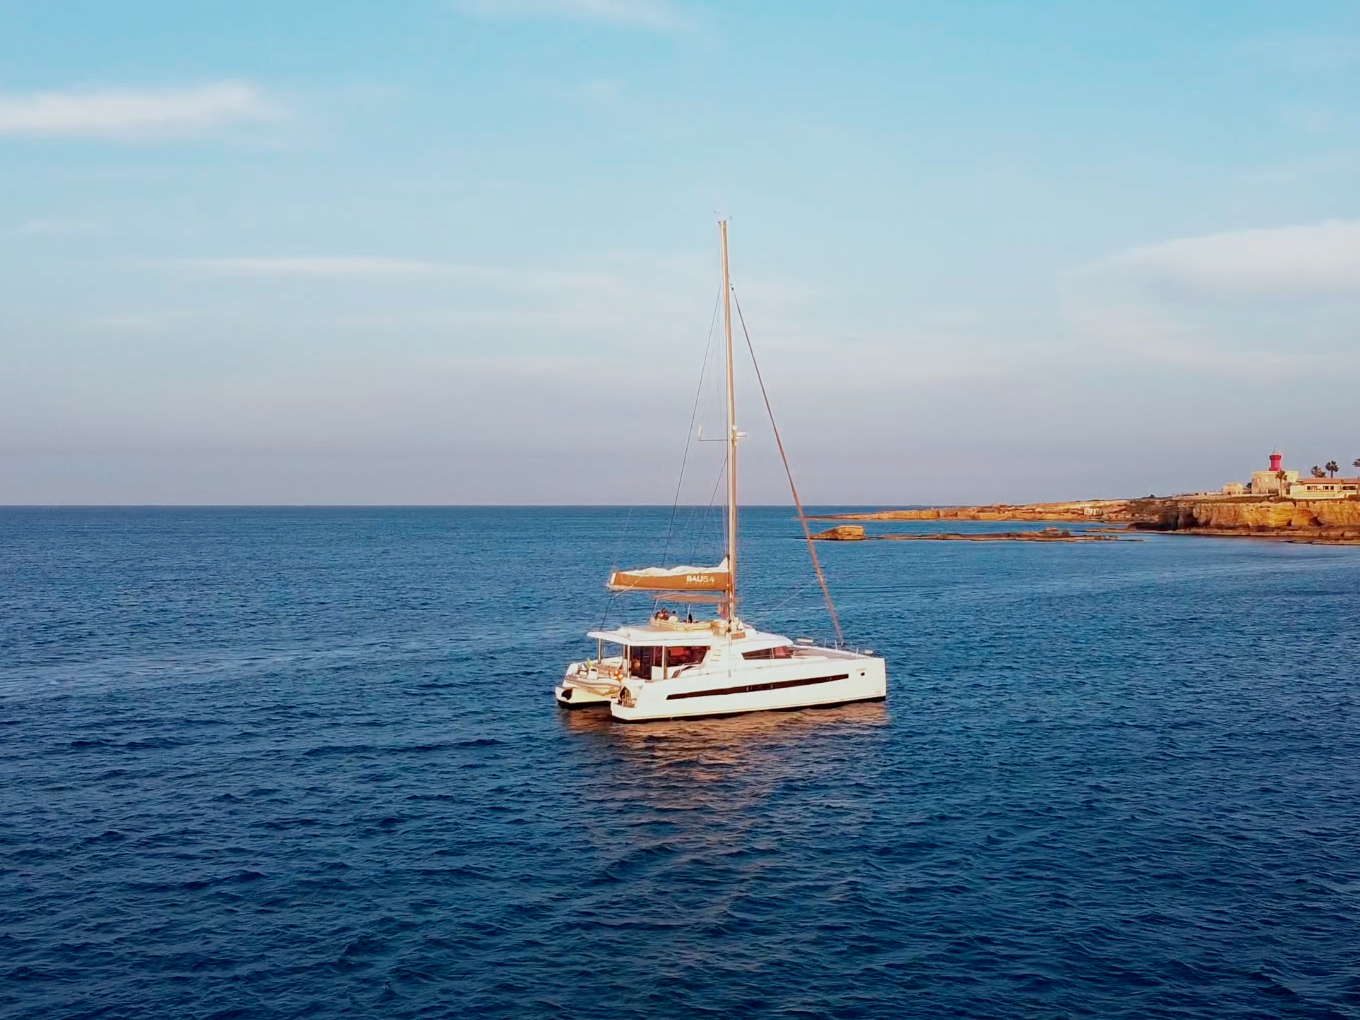 Bali 5.4 - Yacht Charter Capo d'Orlando & Boat hire in Italy Sicily Aeolian Islands Capo d'Orlando Capo d'Orlando Marina 2